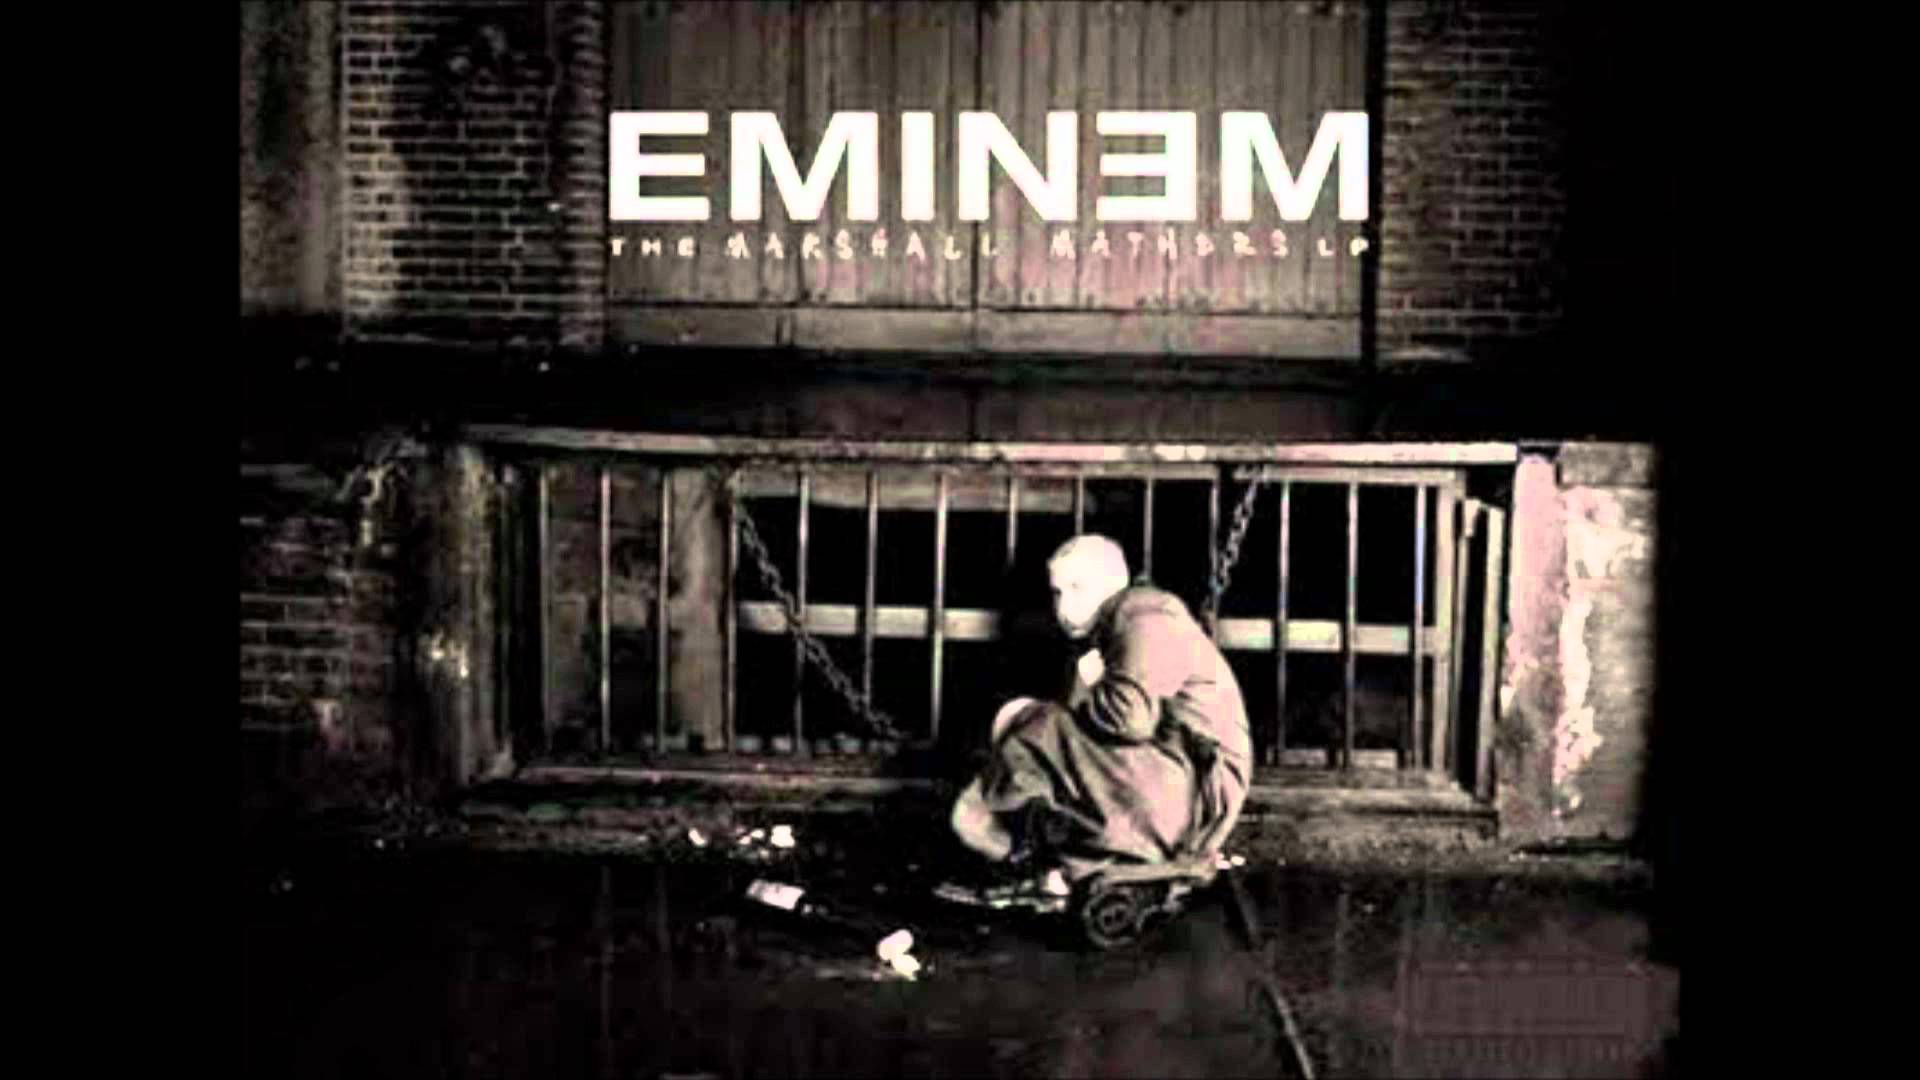 Eminem - Marshall Mathers Remix - YouTube